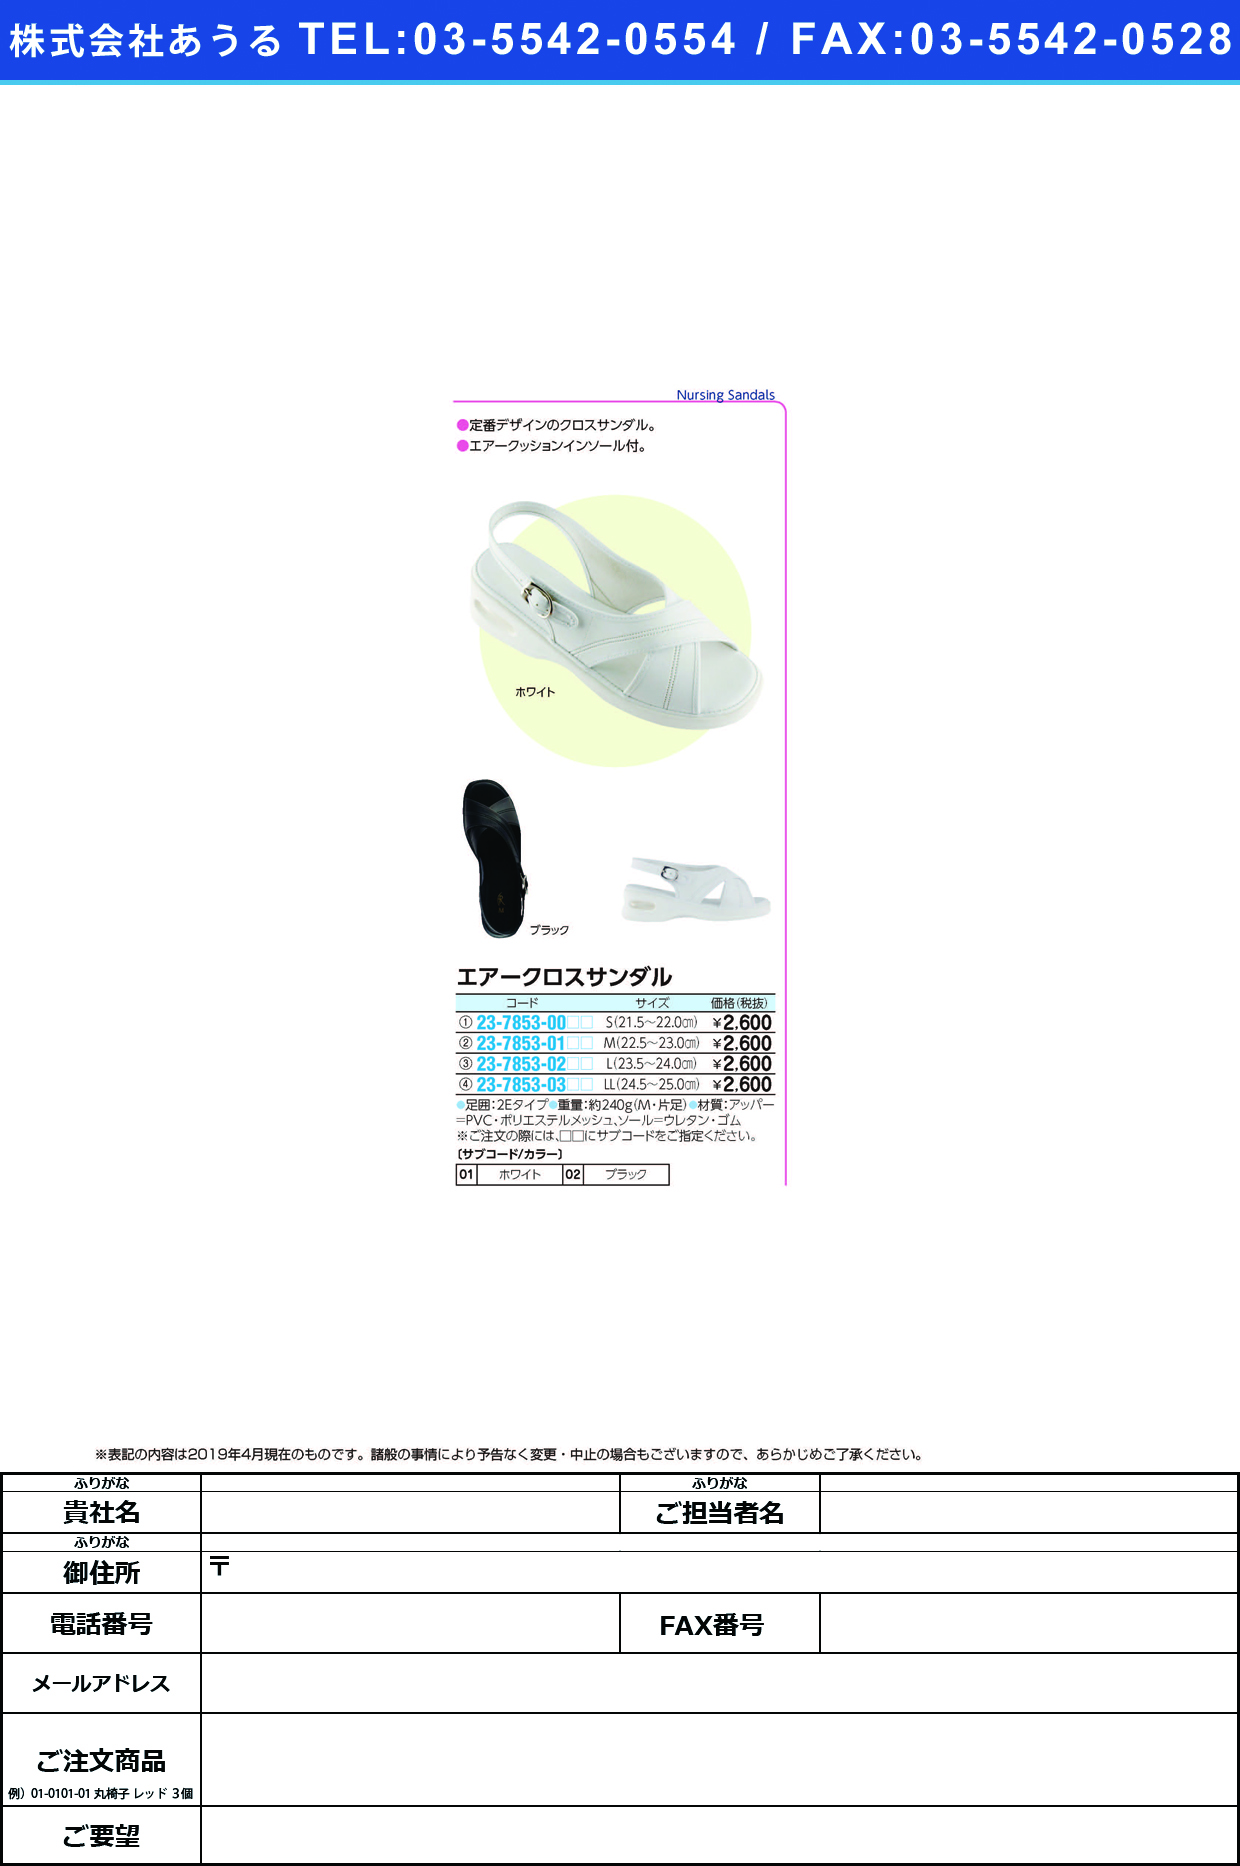 (23-7853-01)エアークロスサンダル M(22.5-23.0CM) ｴｱｰｸﾛｽｻﾝﾀﾞﾙ ブラック(ファーストレイト)【1足単位】【2019年カタログ商品】